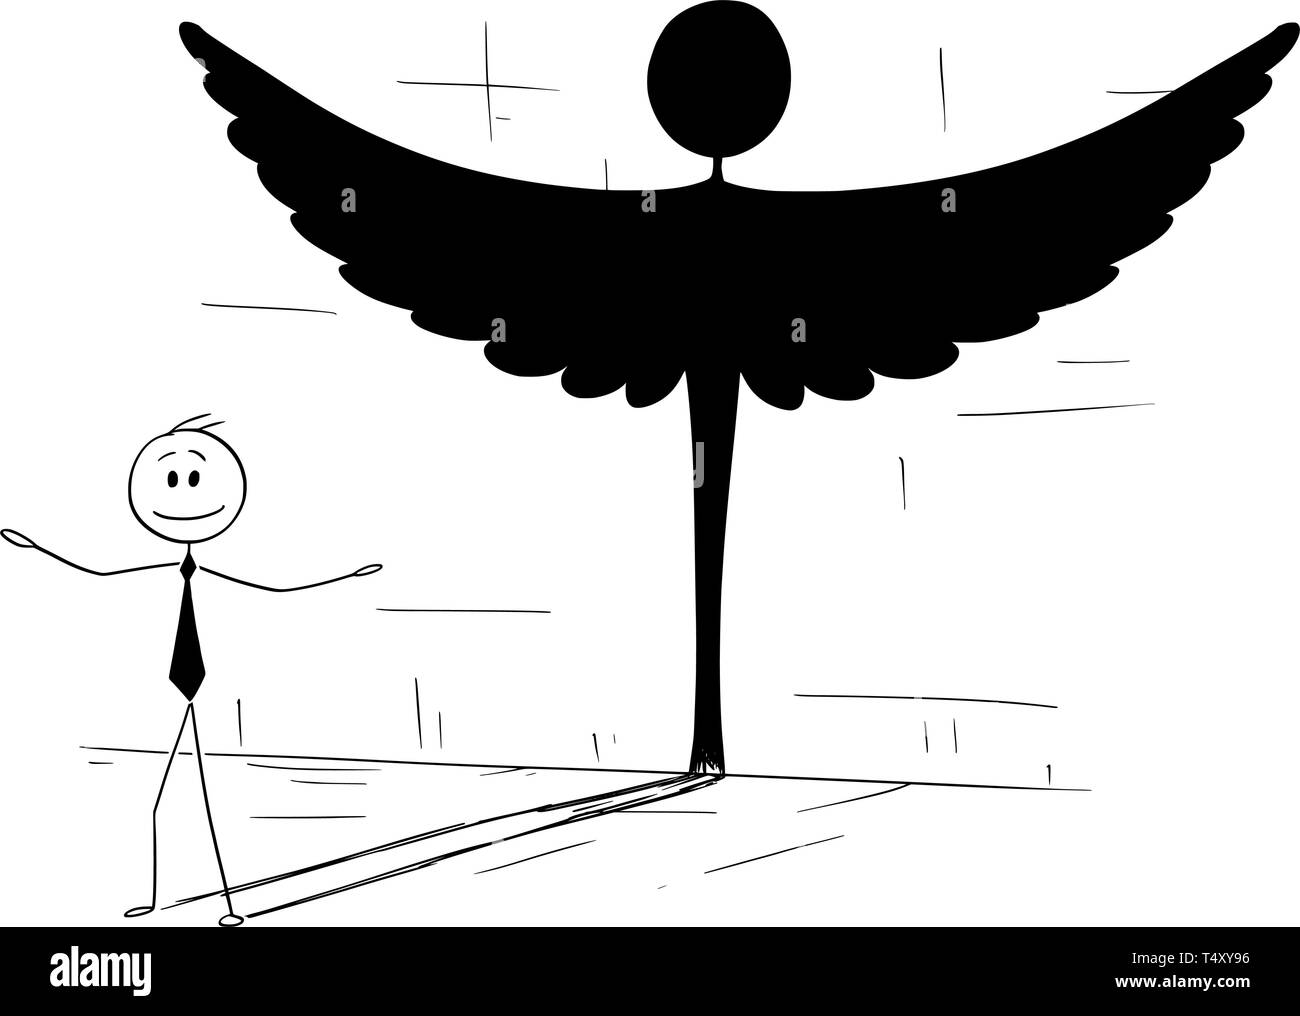 Cartoon stick figure dessin illustration conceptuelle de bon homme d'affaires ou homme politique d'ombre en forme d'ange. Illustration de Vecteur